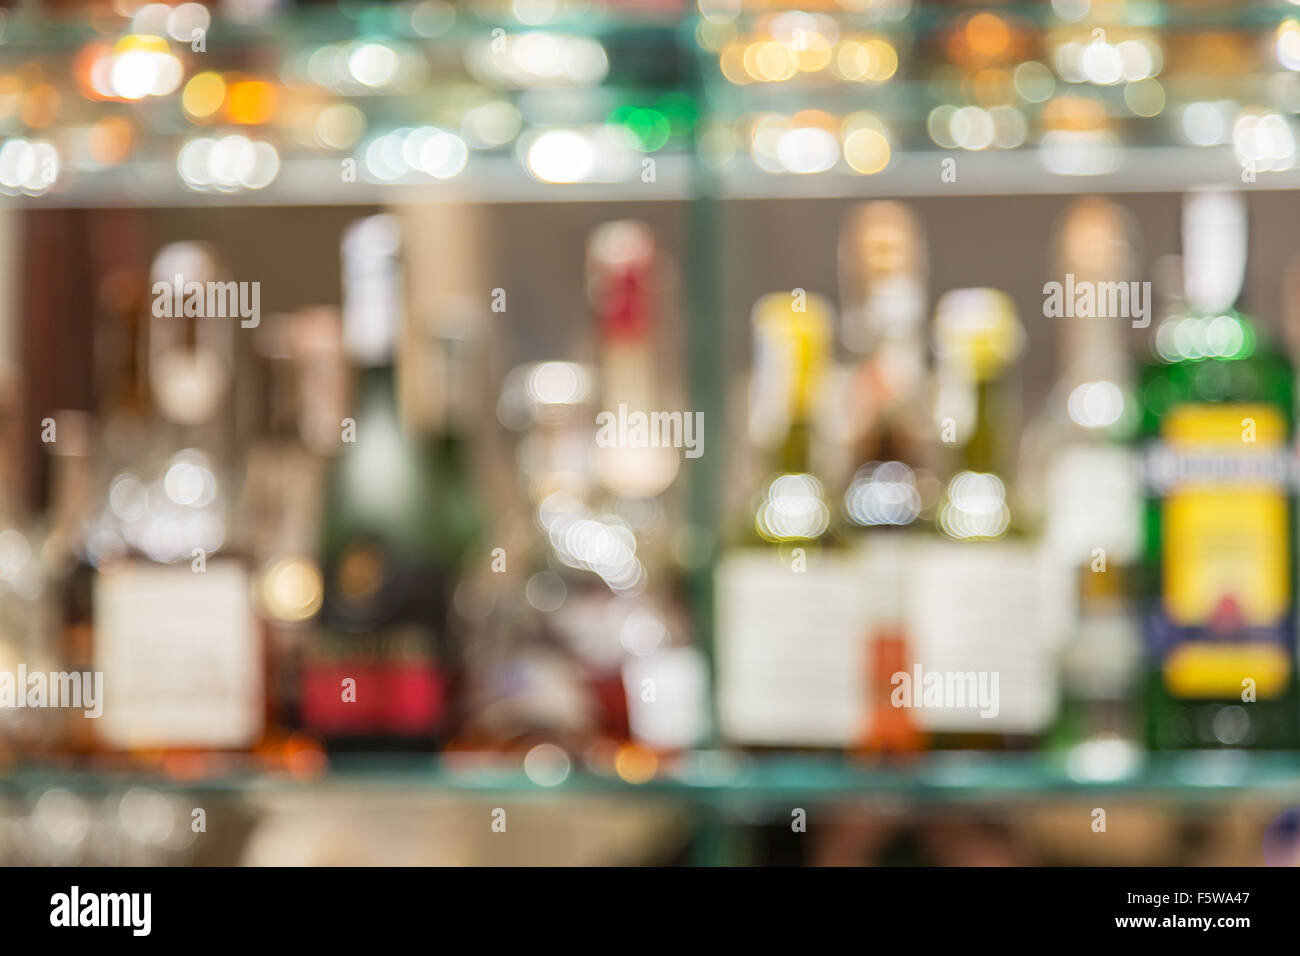 Contador de barra de cristal con estantes borrosa con botellas de alcohol en el fondo. Foto de stock